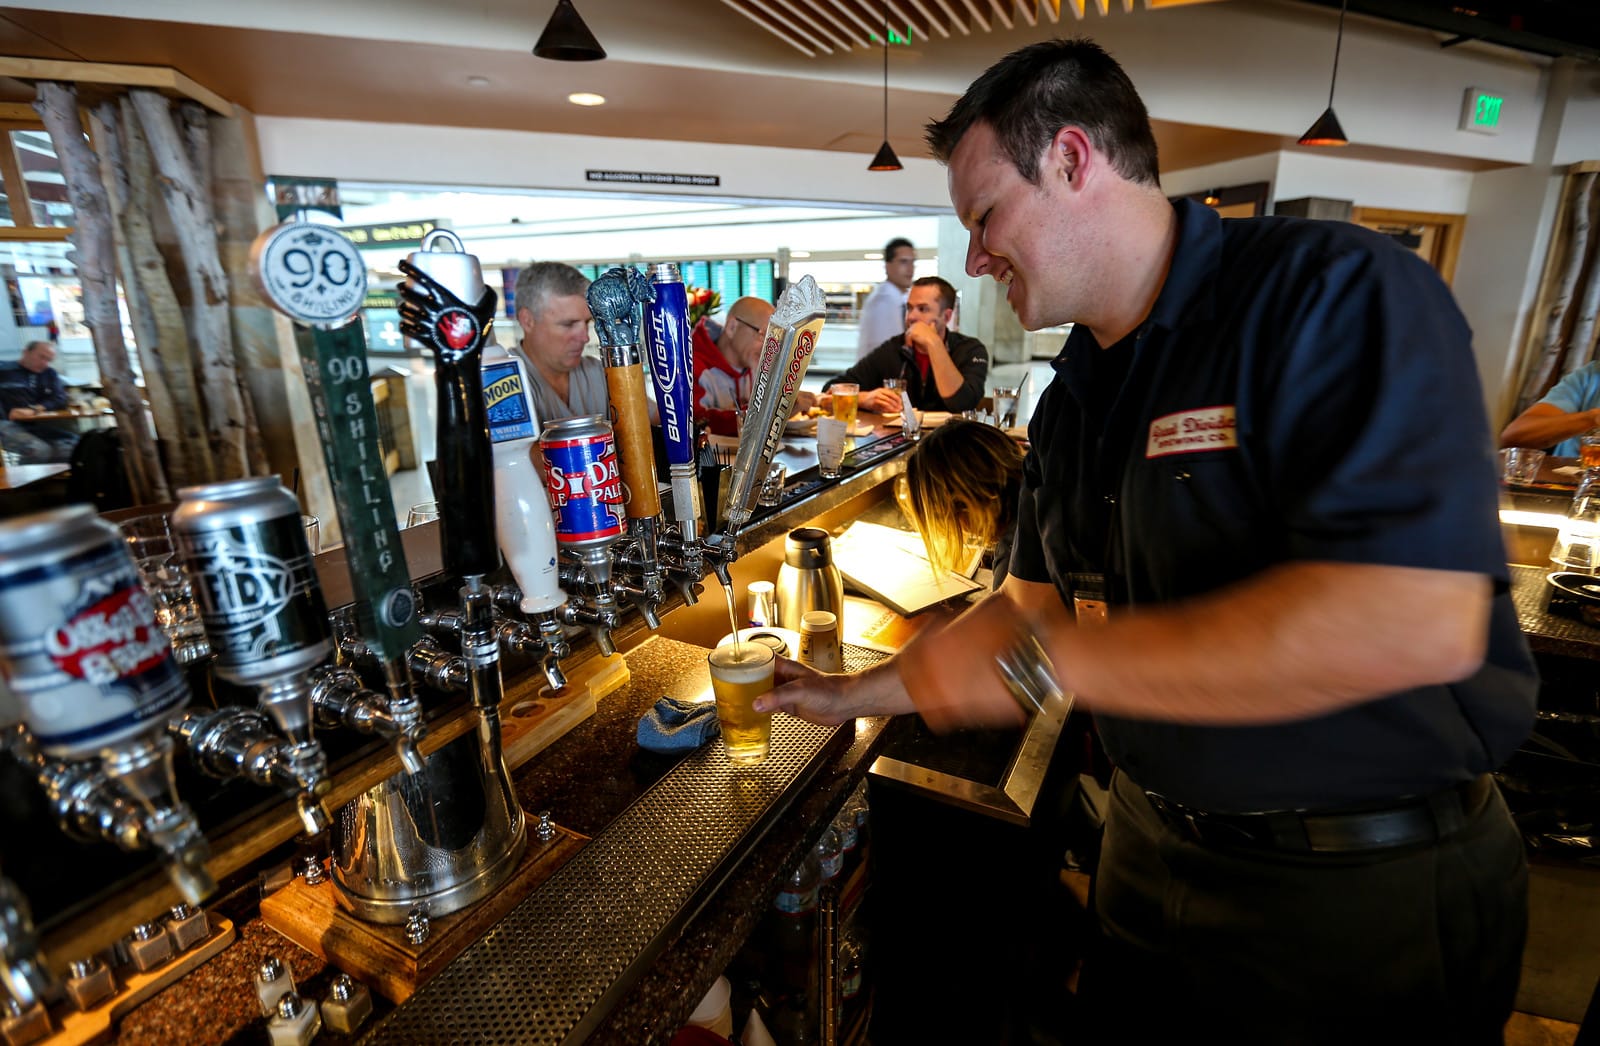 Denver International Airport restaurant faces liquor license suspension